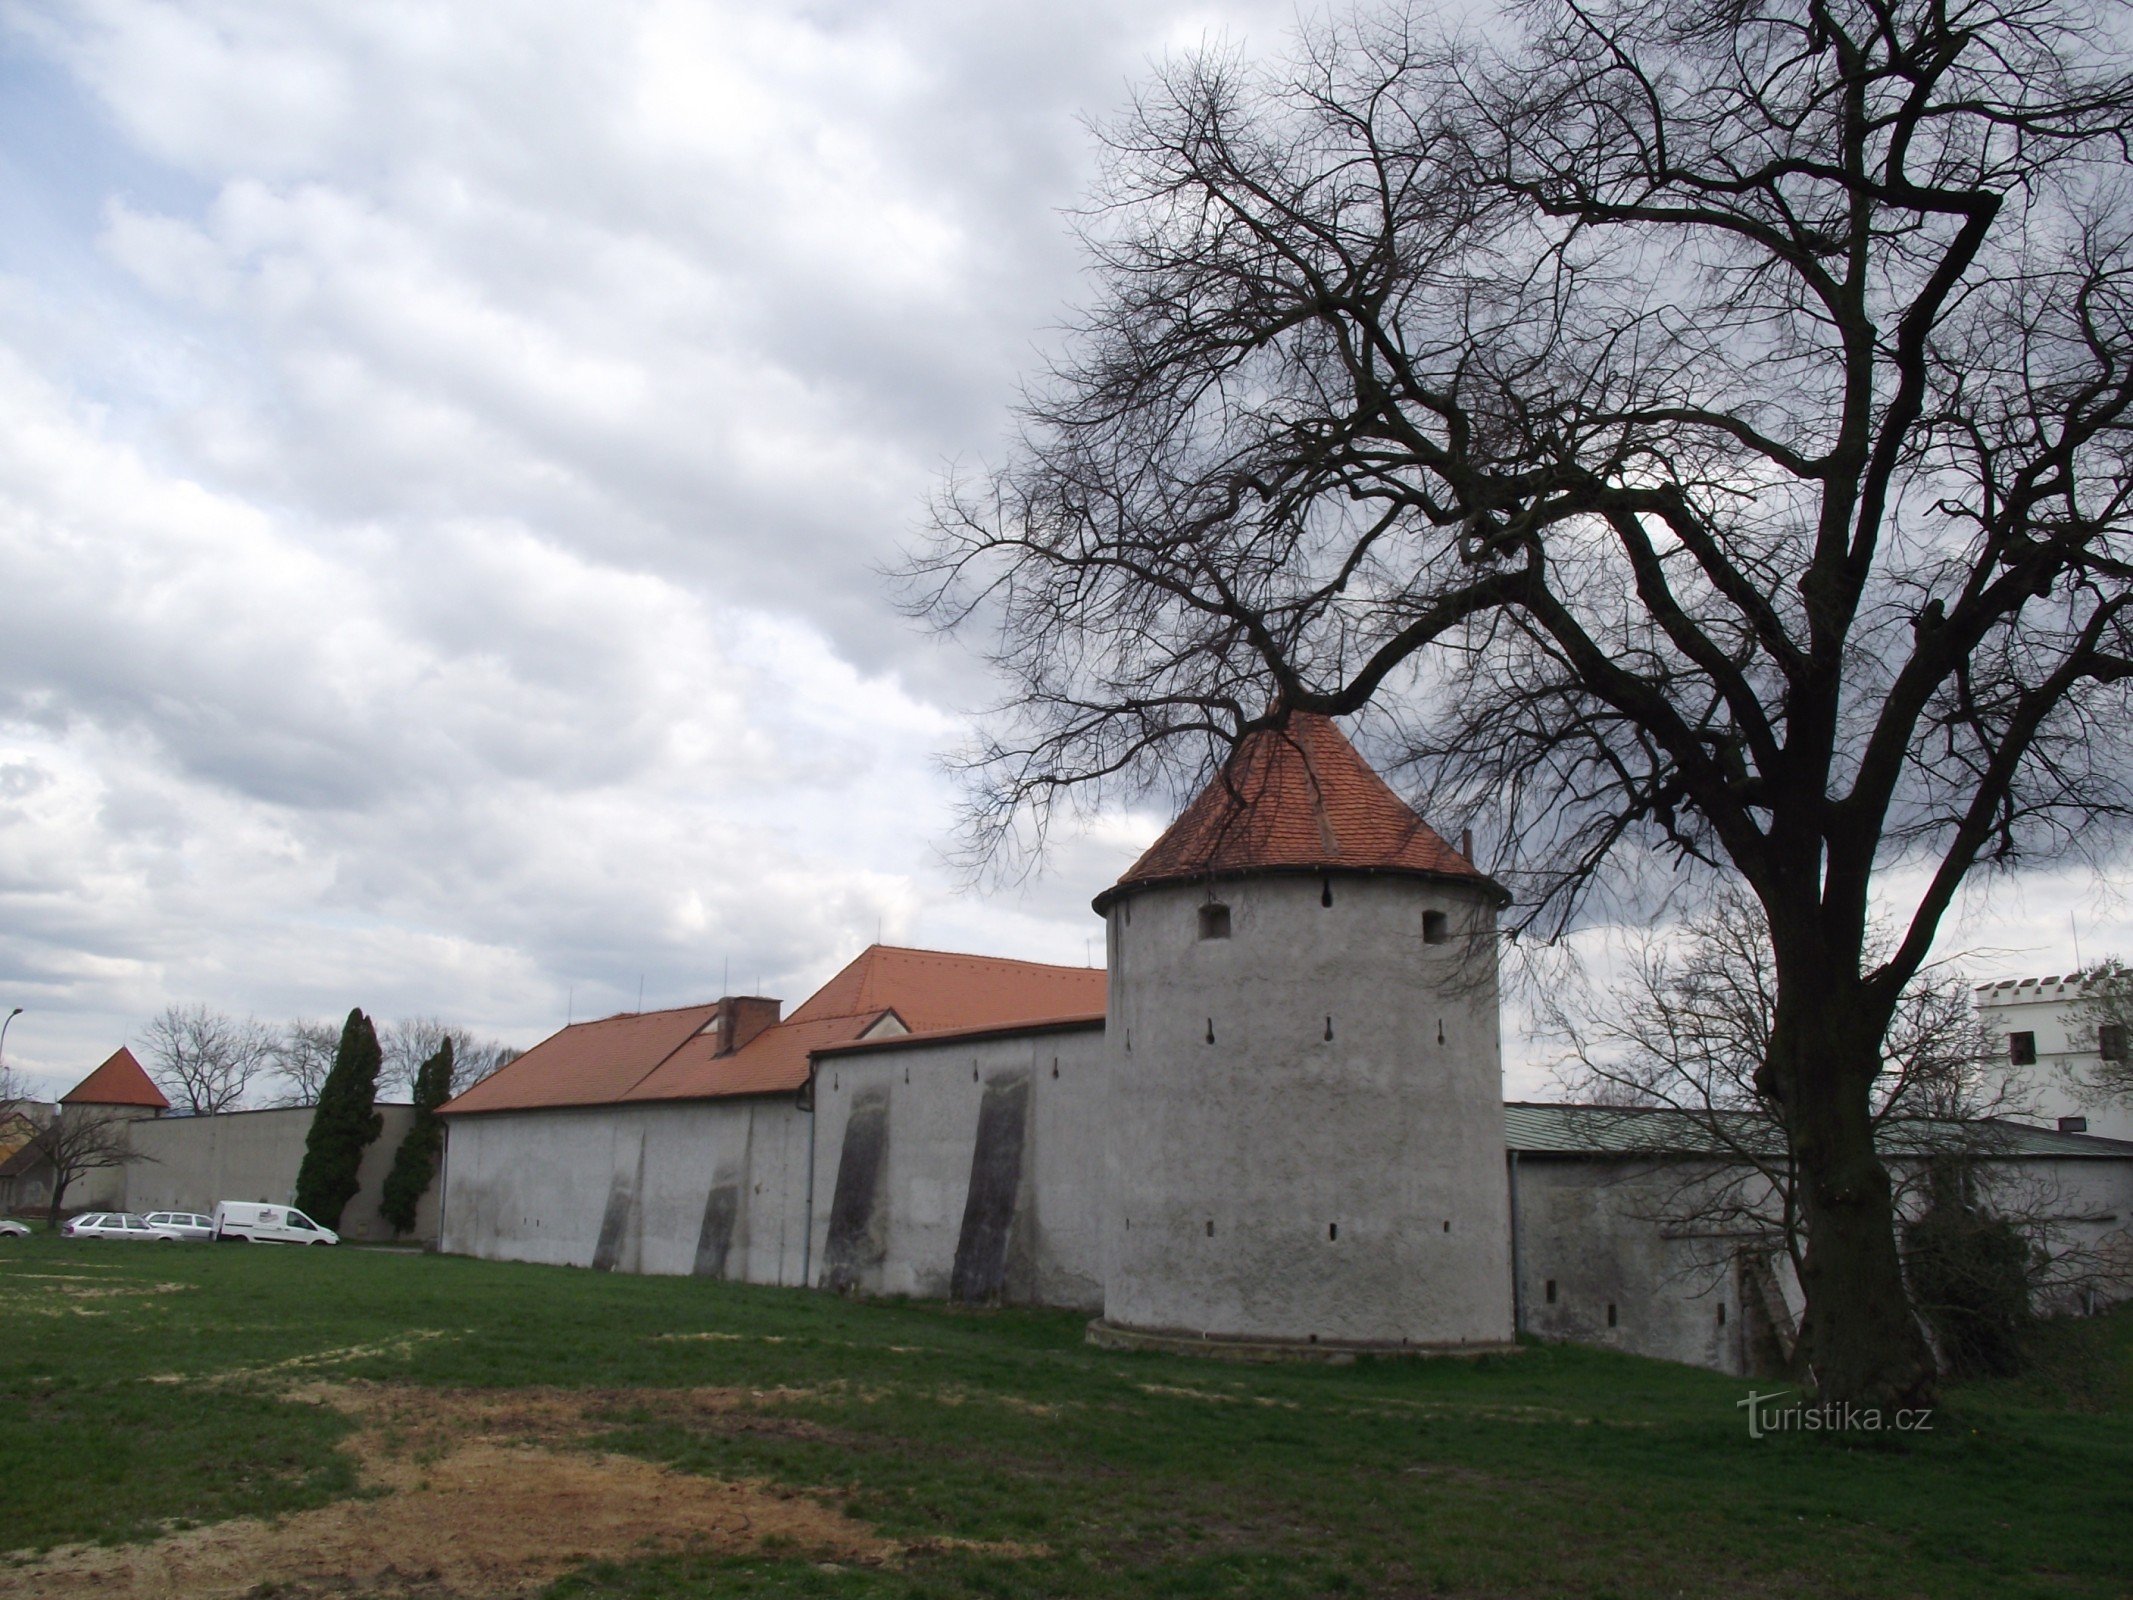 Uherský Brod - fortificaciones de la ciudad